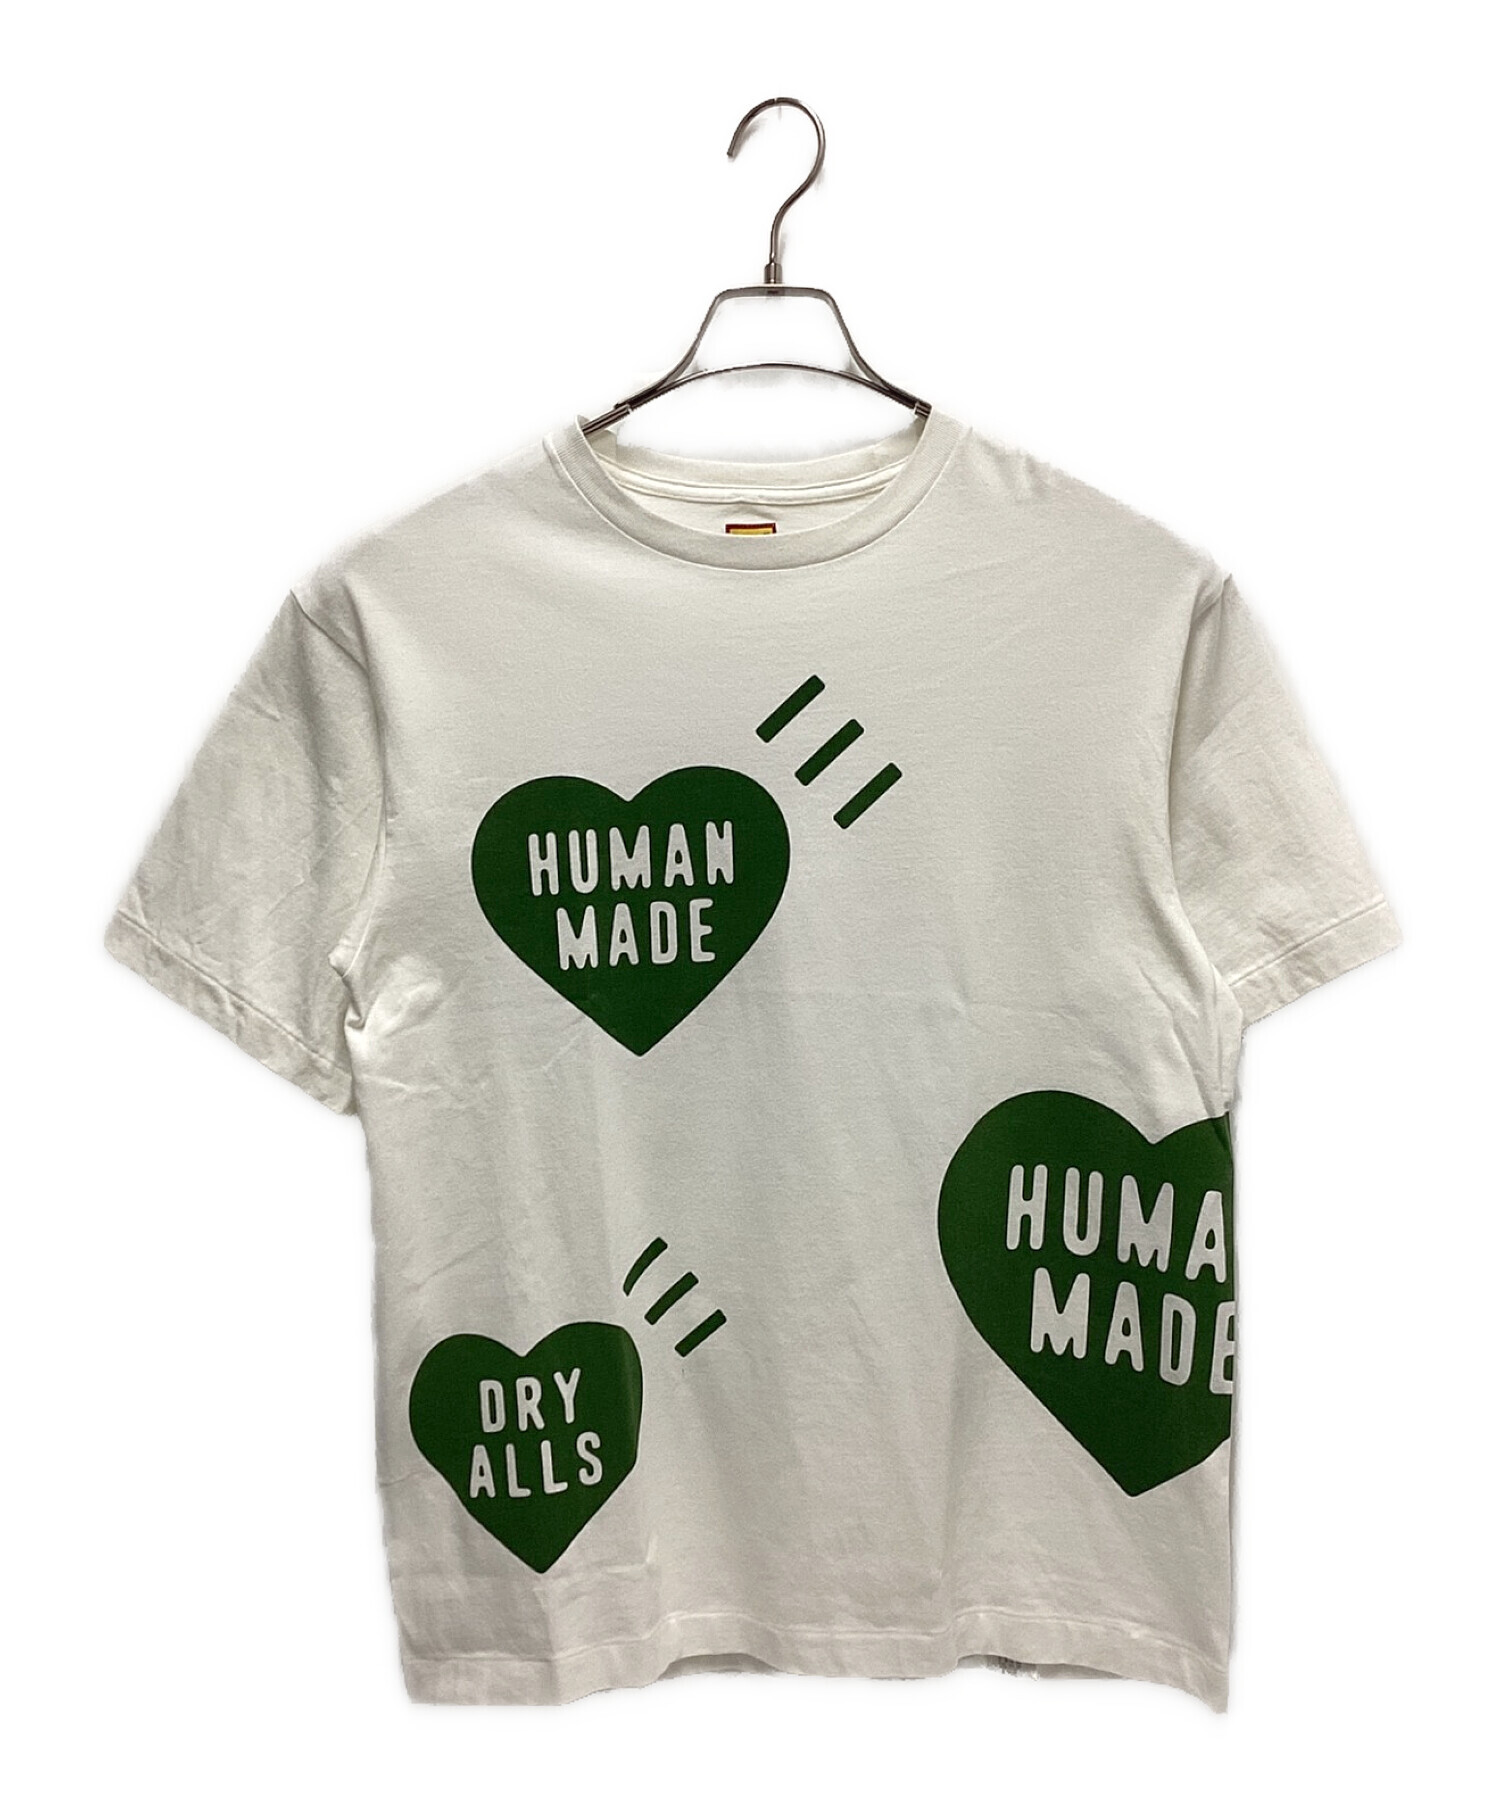 京都限定のTシャツですHUMAN MADE HEART T-SHIRT GREEN Mサイズ